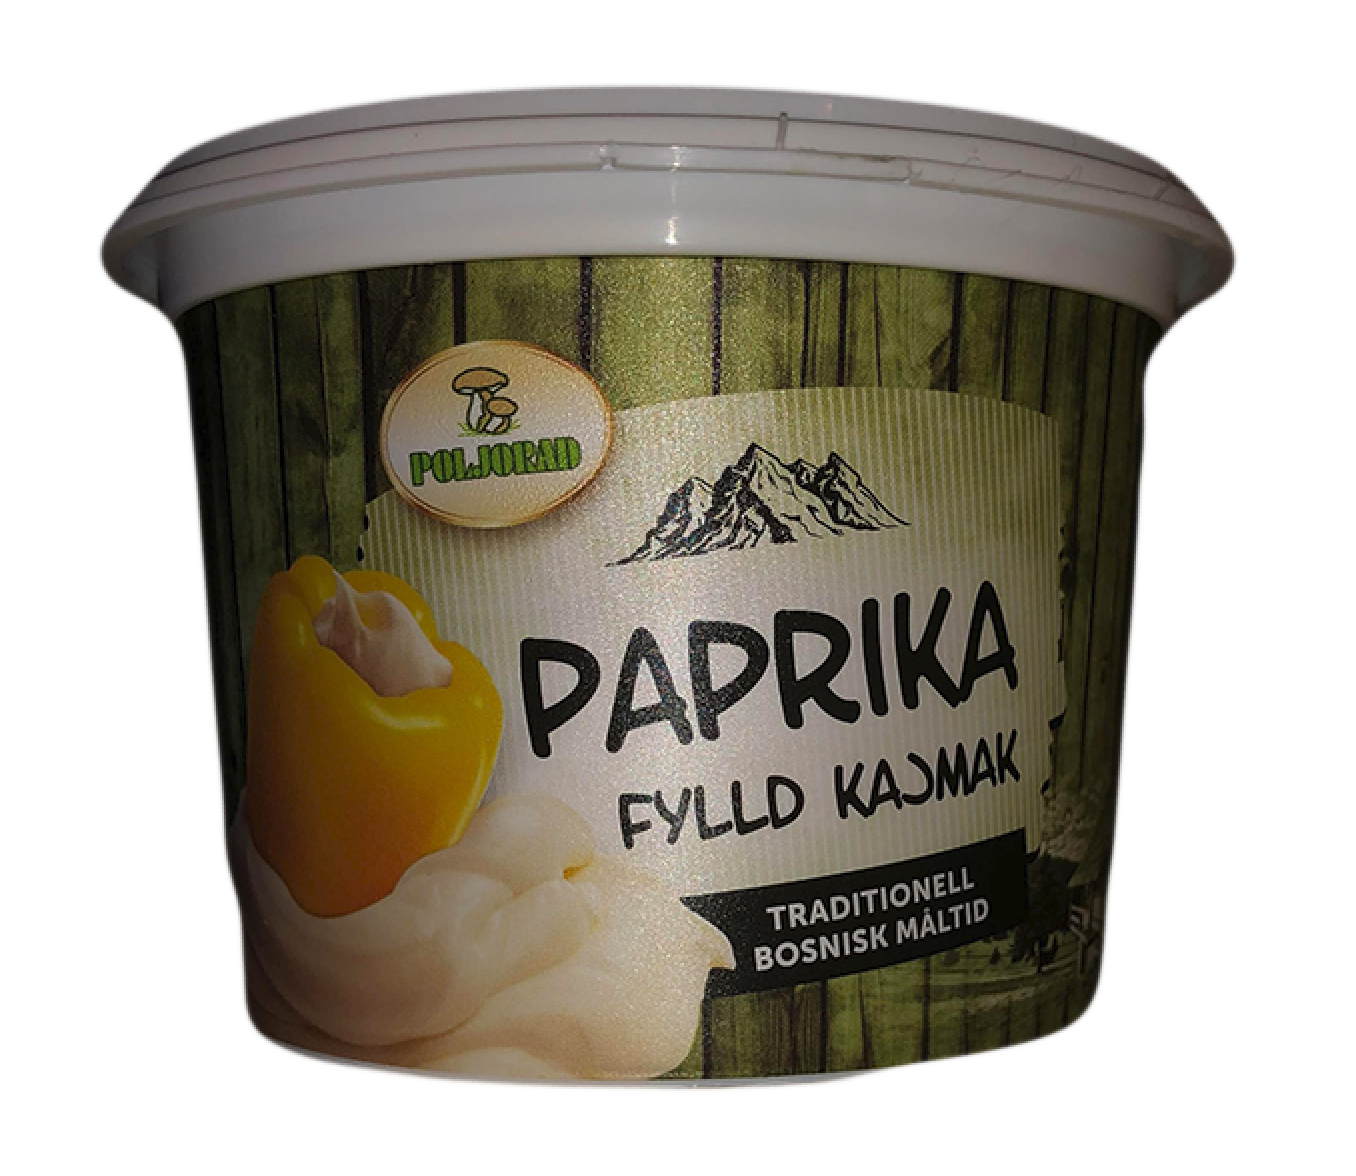 Paprika gefüllt mit Kajmak